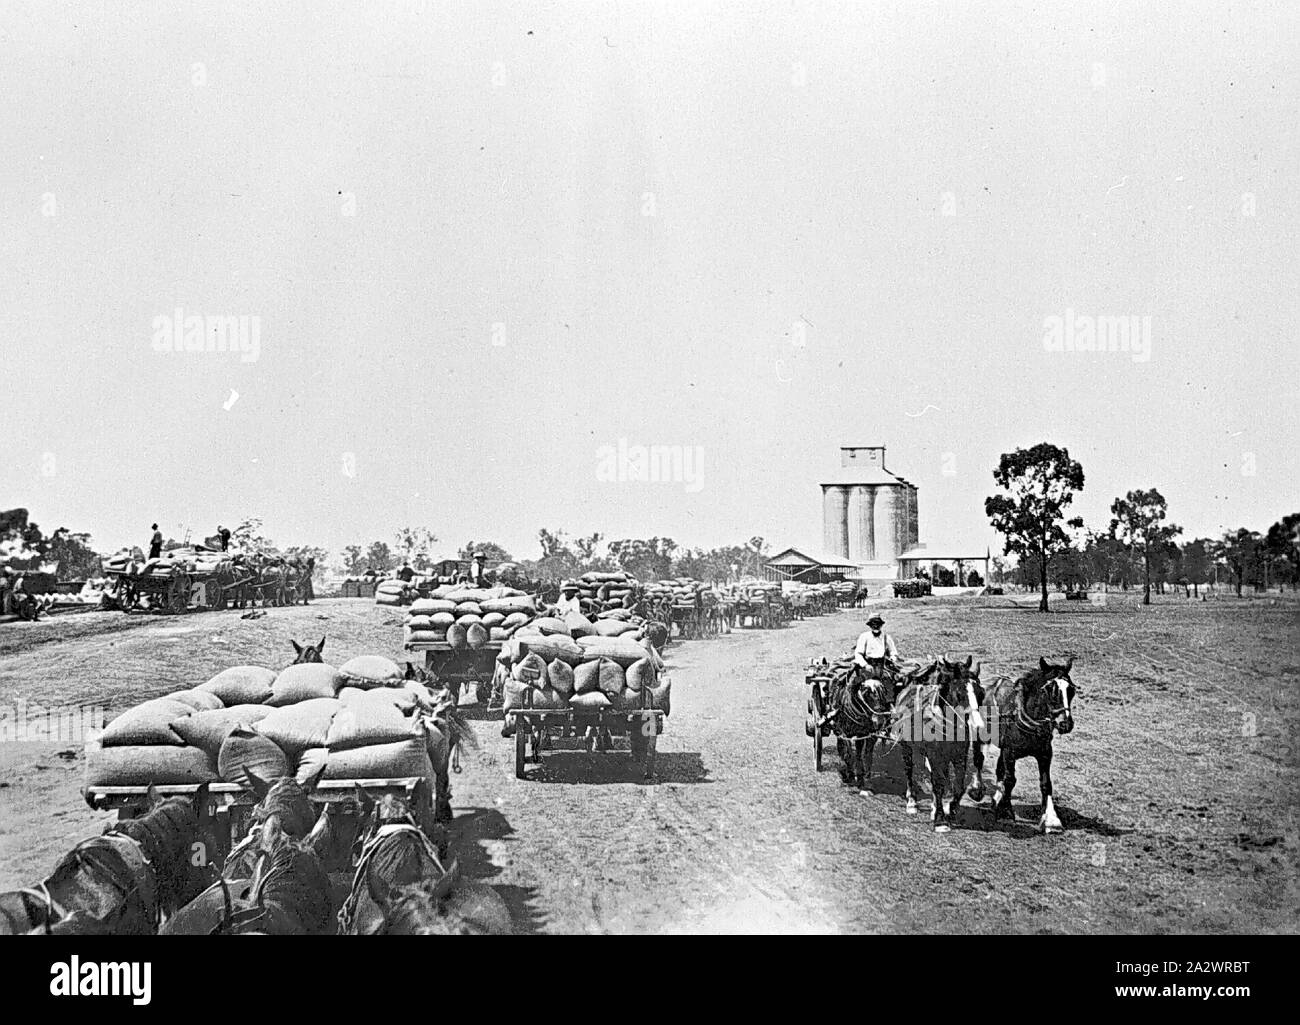 Negativo - Finlay, Nuovo Galles del Sud, circa 1920, carri trainati da cavalli in attesa di scarico sacchi di grano al Finlay raccordo ferroviario e silo Foto Stock